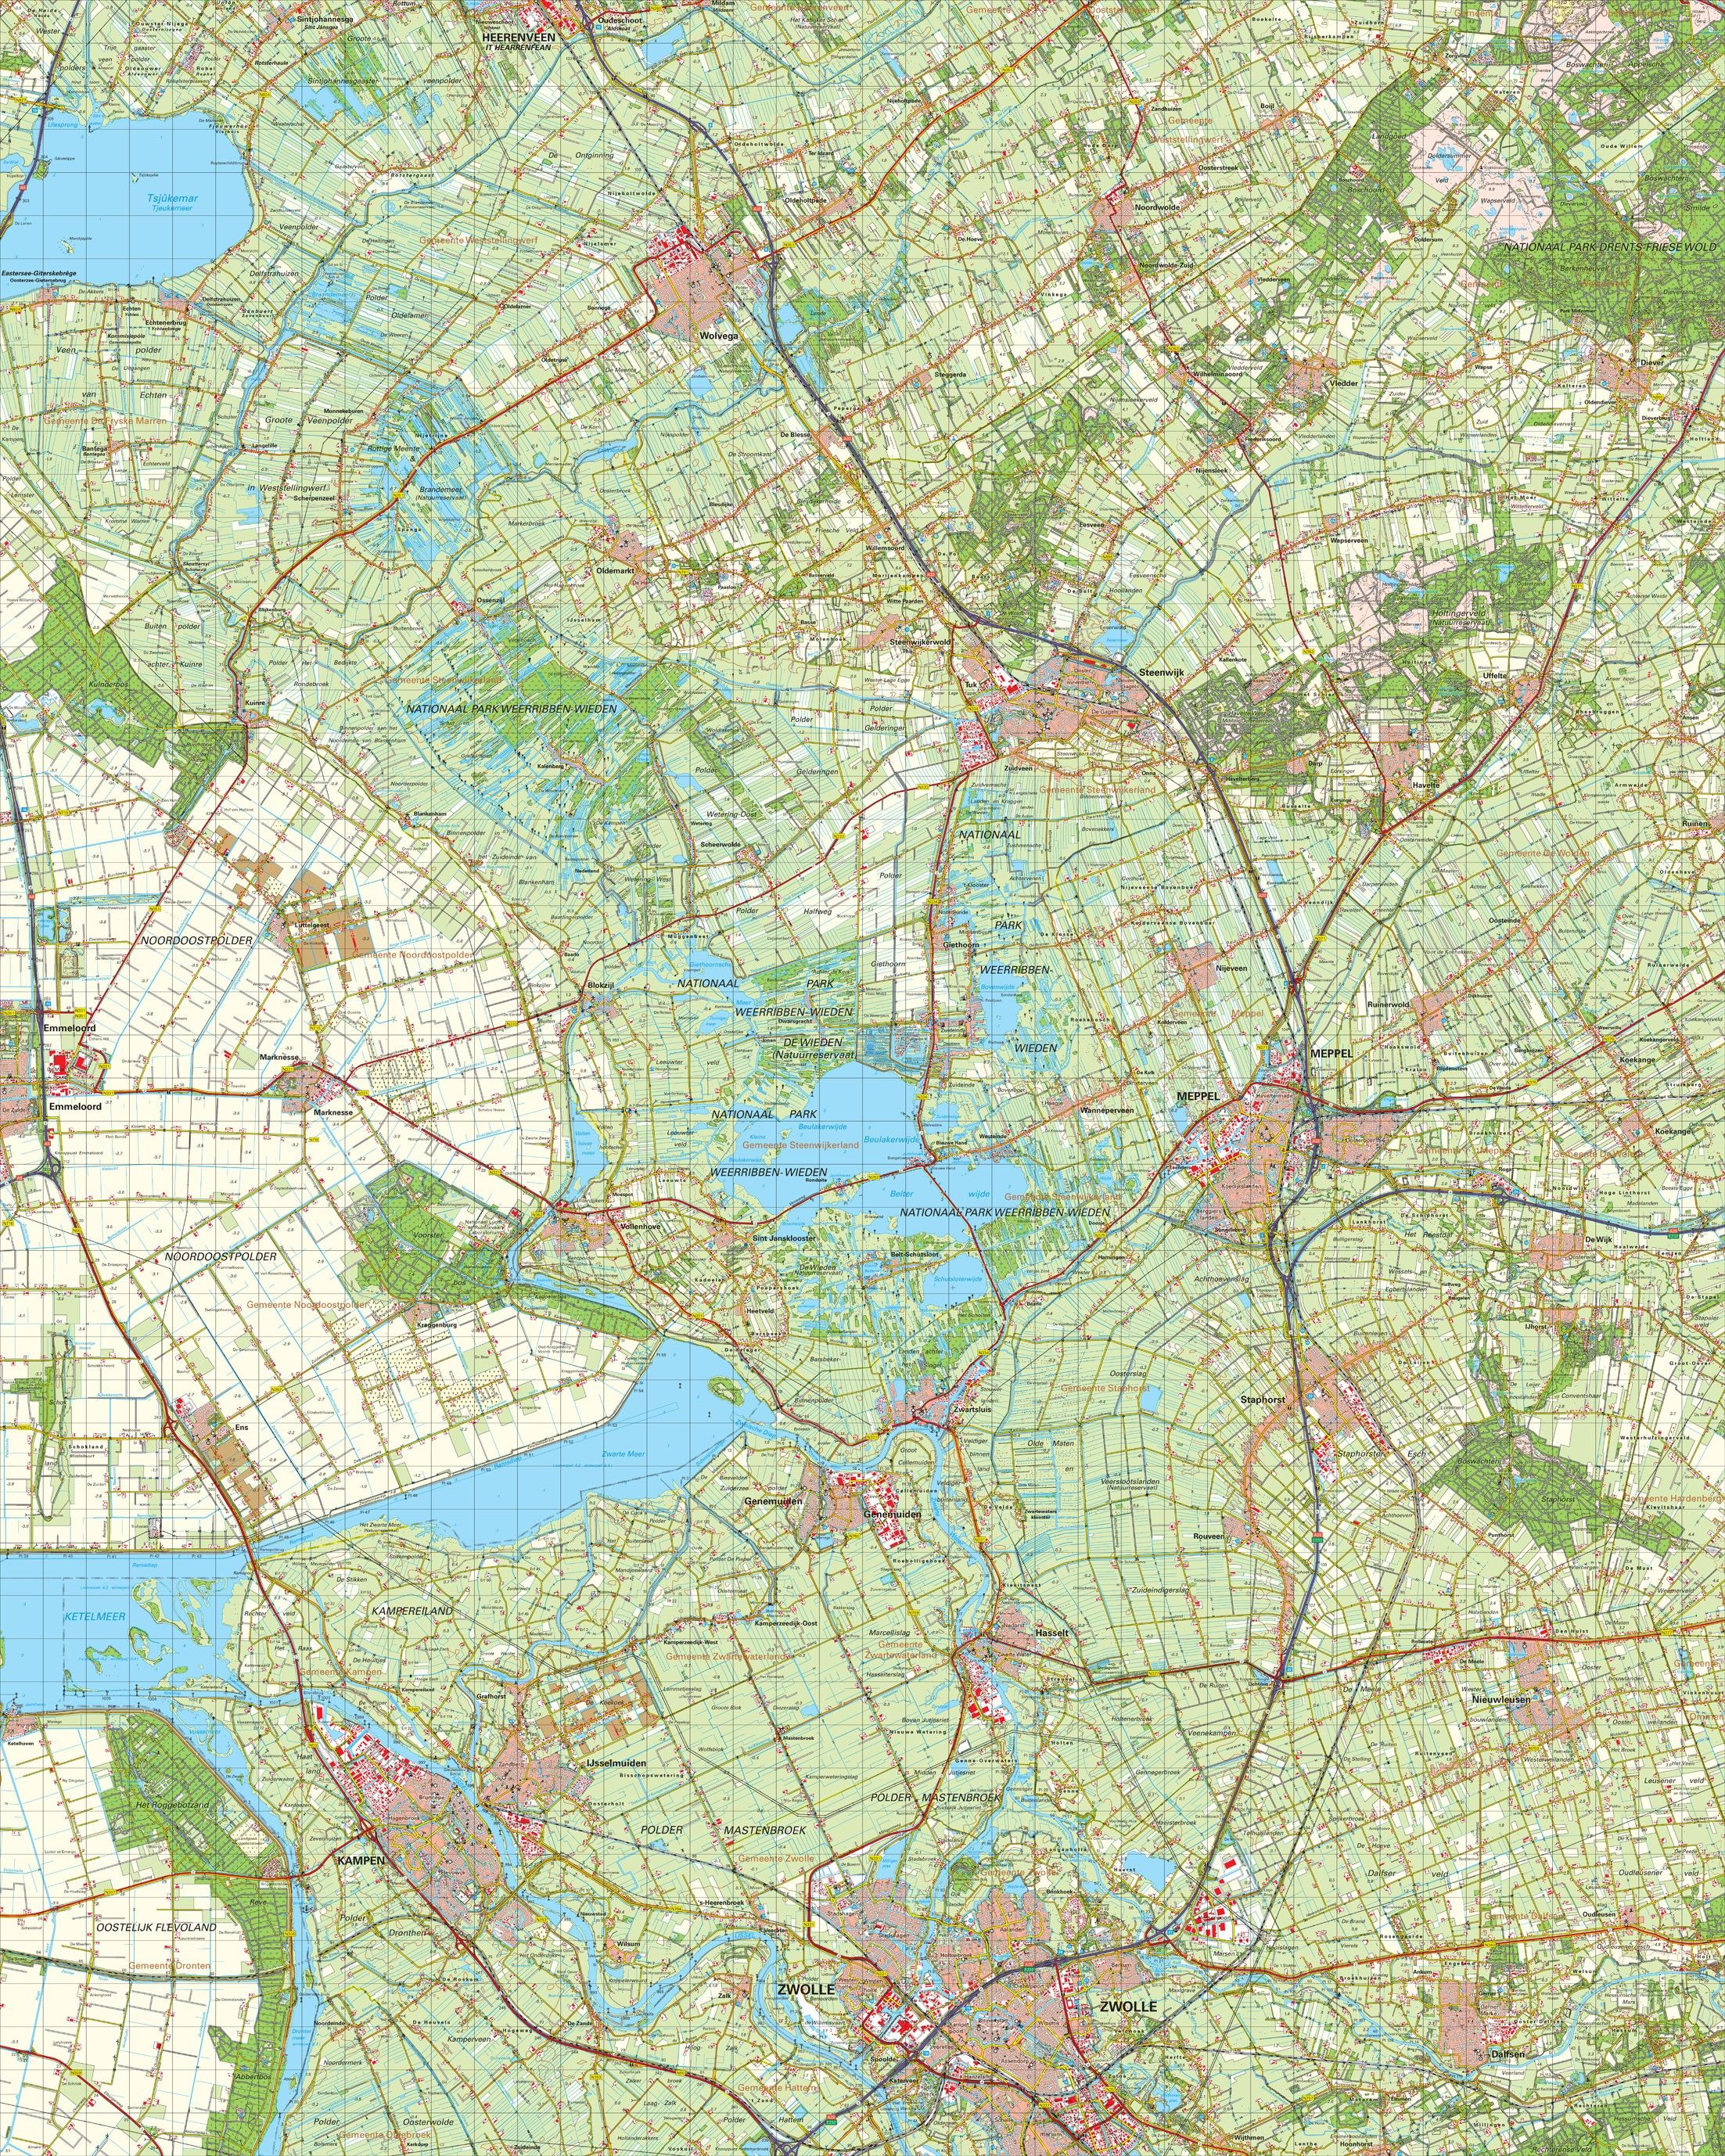 Topografische kaart schaal 1:50.000 (Emmeloord,Wolvega,Steenwijk,Meppel,Zwolle)